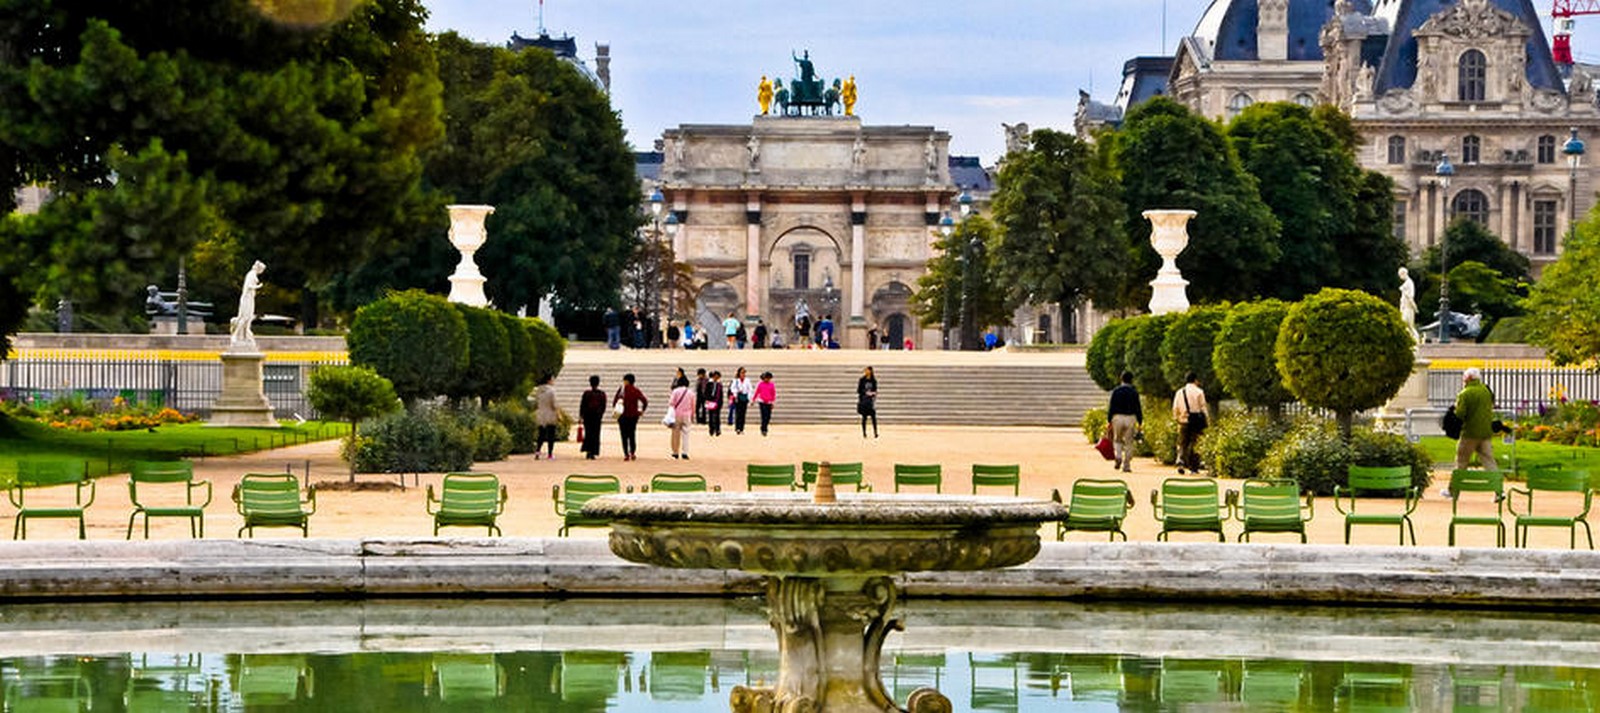 Сады Тюильри вид на площадь согласия в Париже